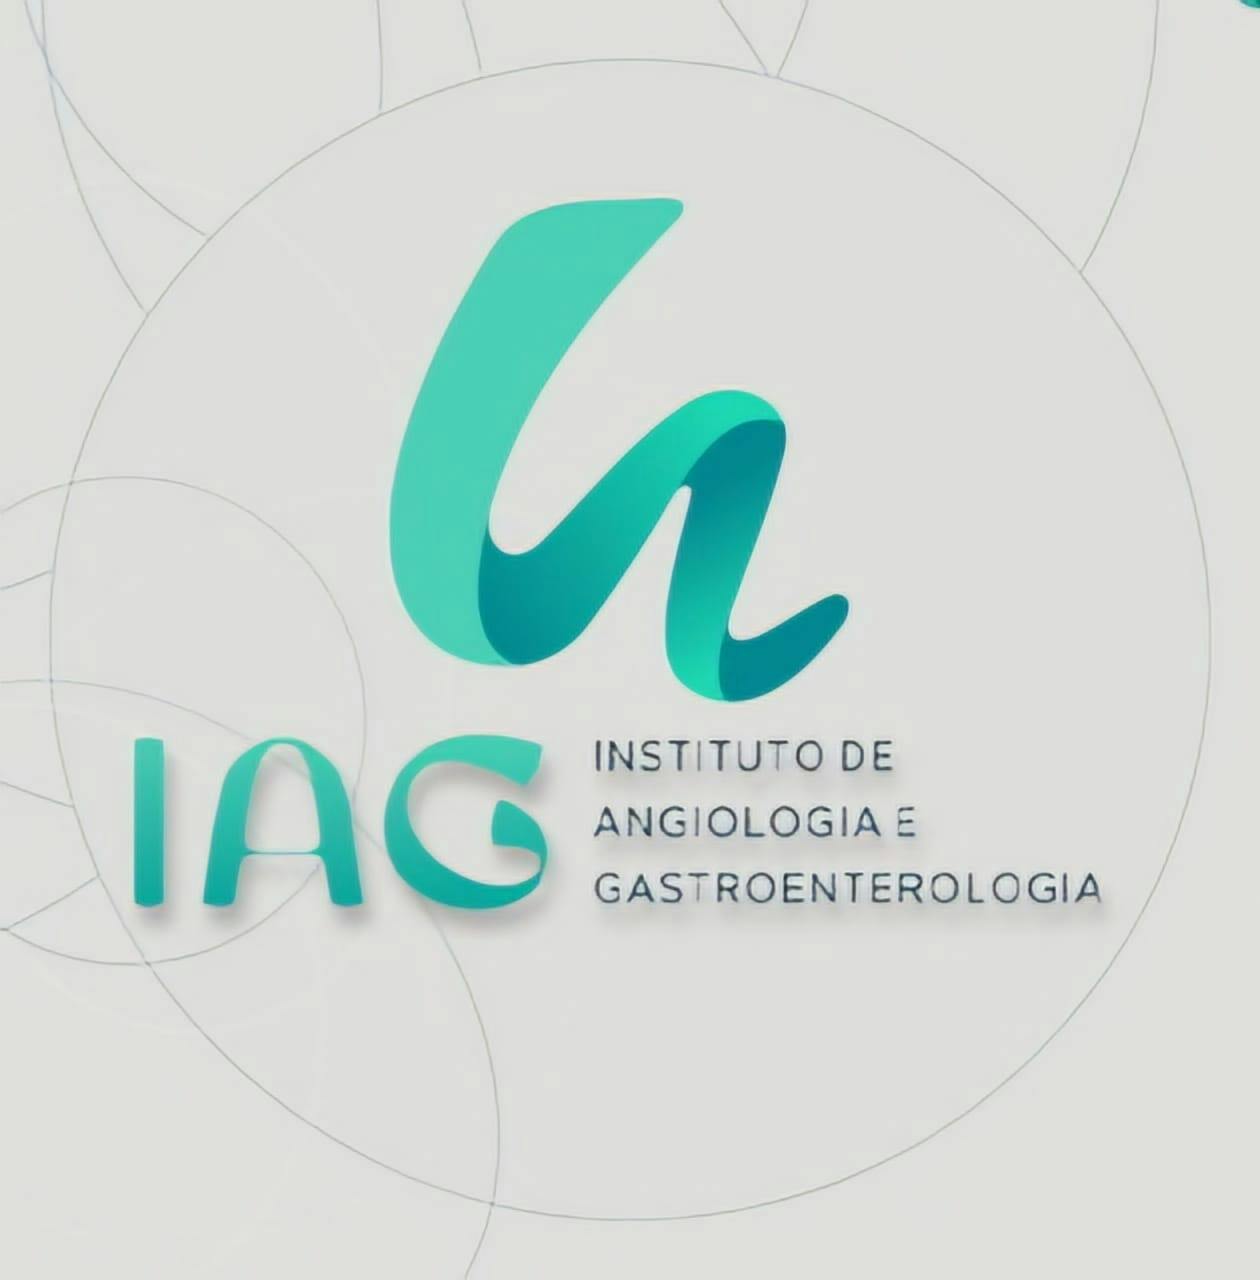 Instituto de Angiologia e Gastroenterologia